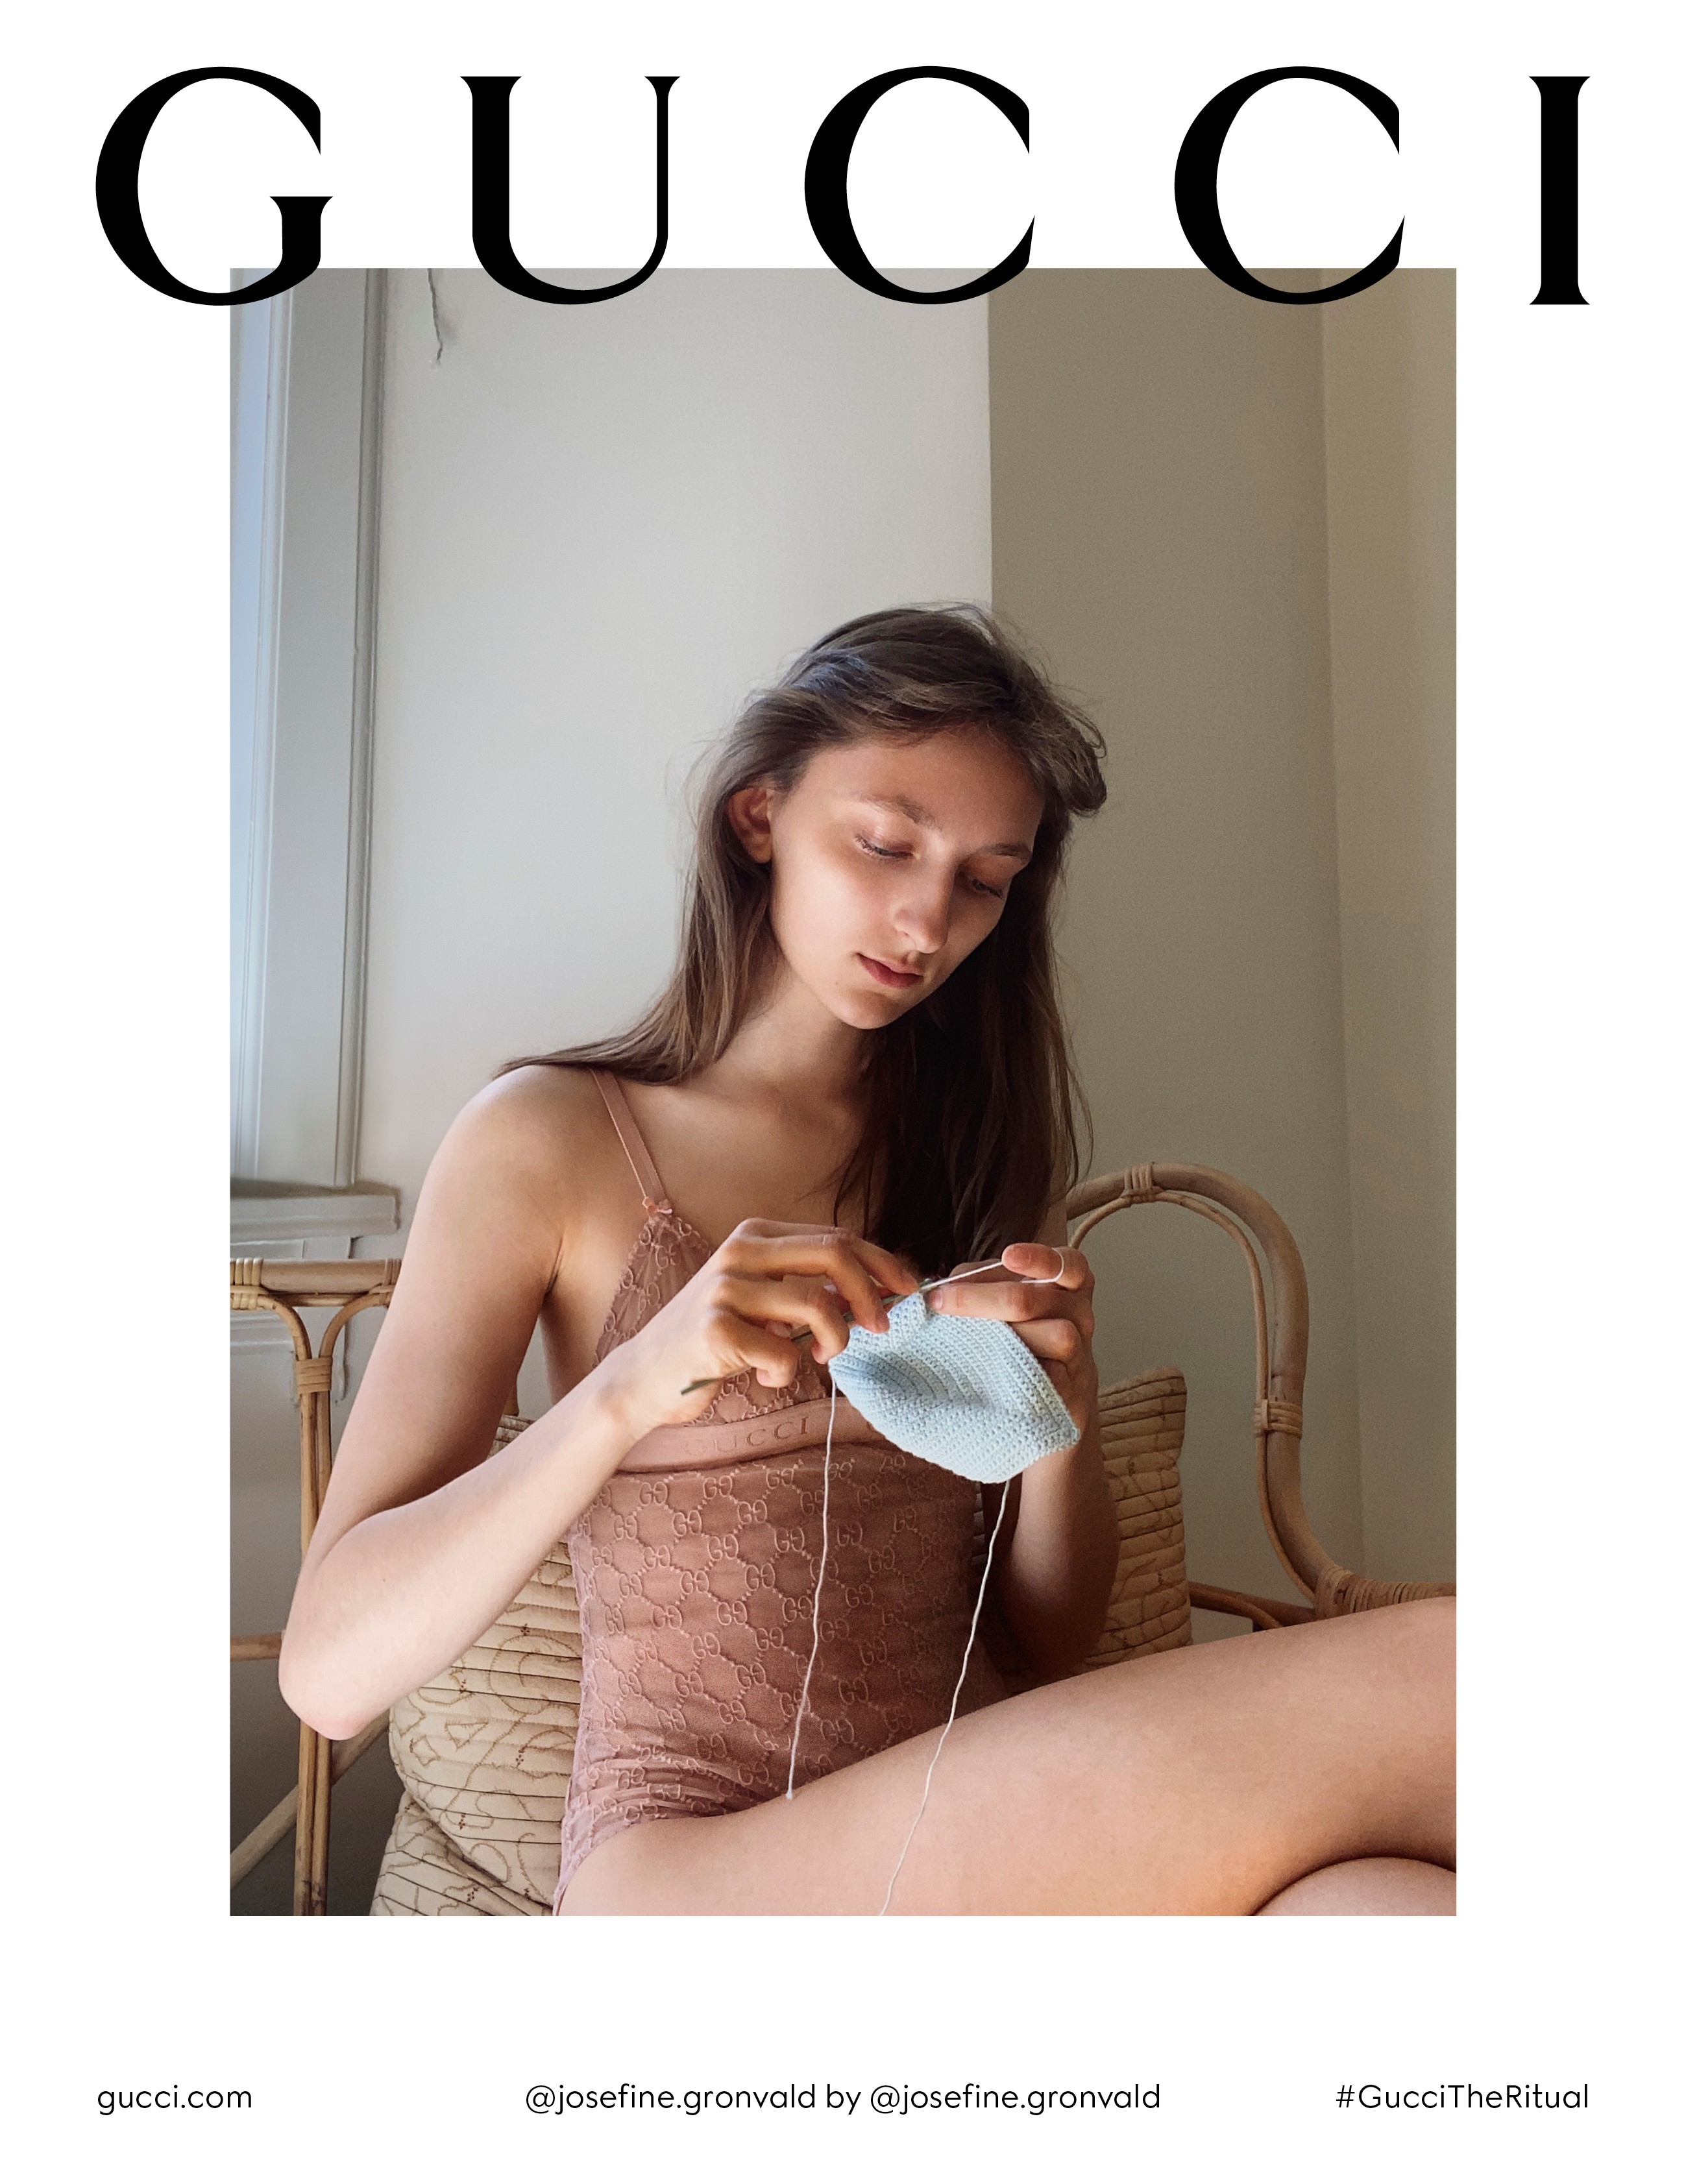 e essa campanha nova da Gucci? : r/brasil